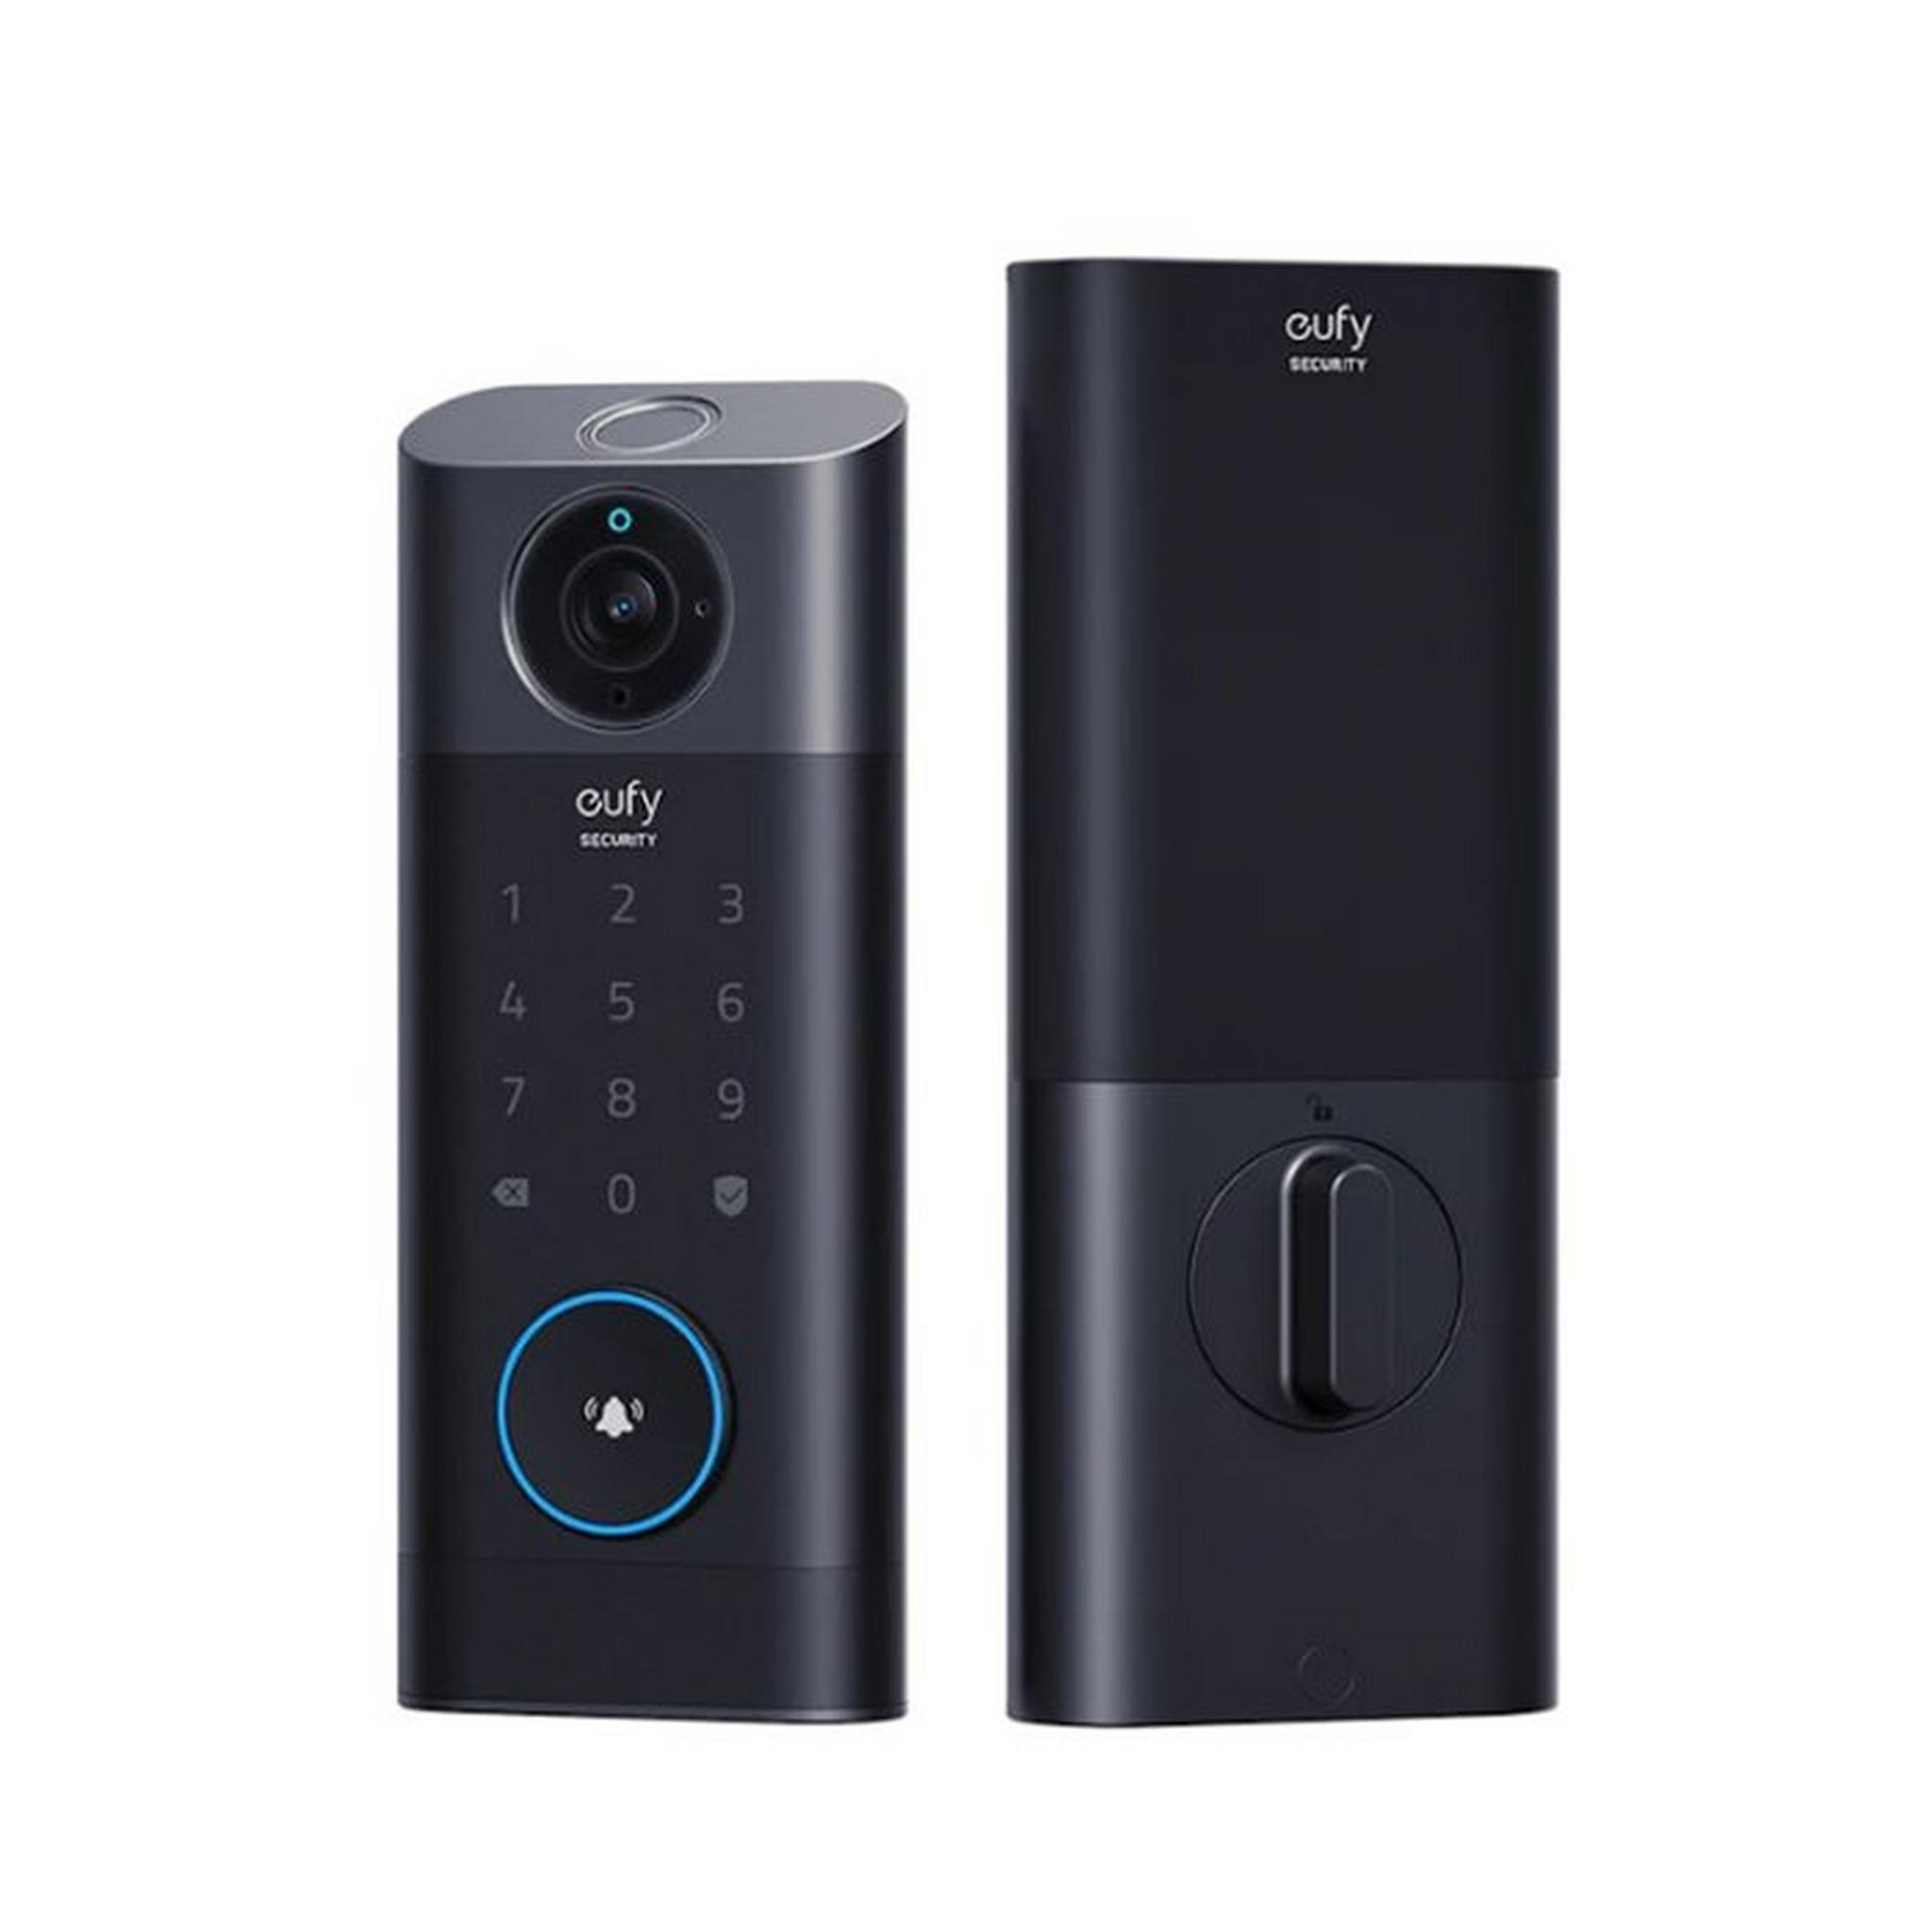 Eufy 3-in-1 Security Video Smart Lock, Fingerprint & Wi-Fi, 2K HD, E8530KY1 - Black